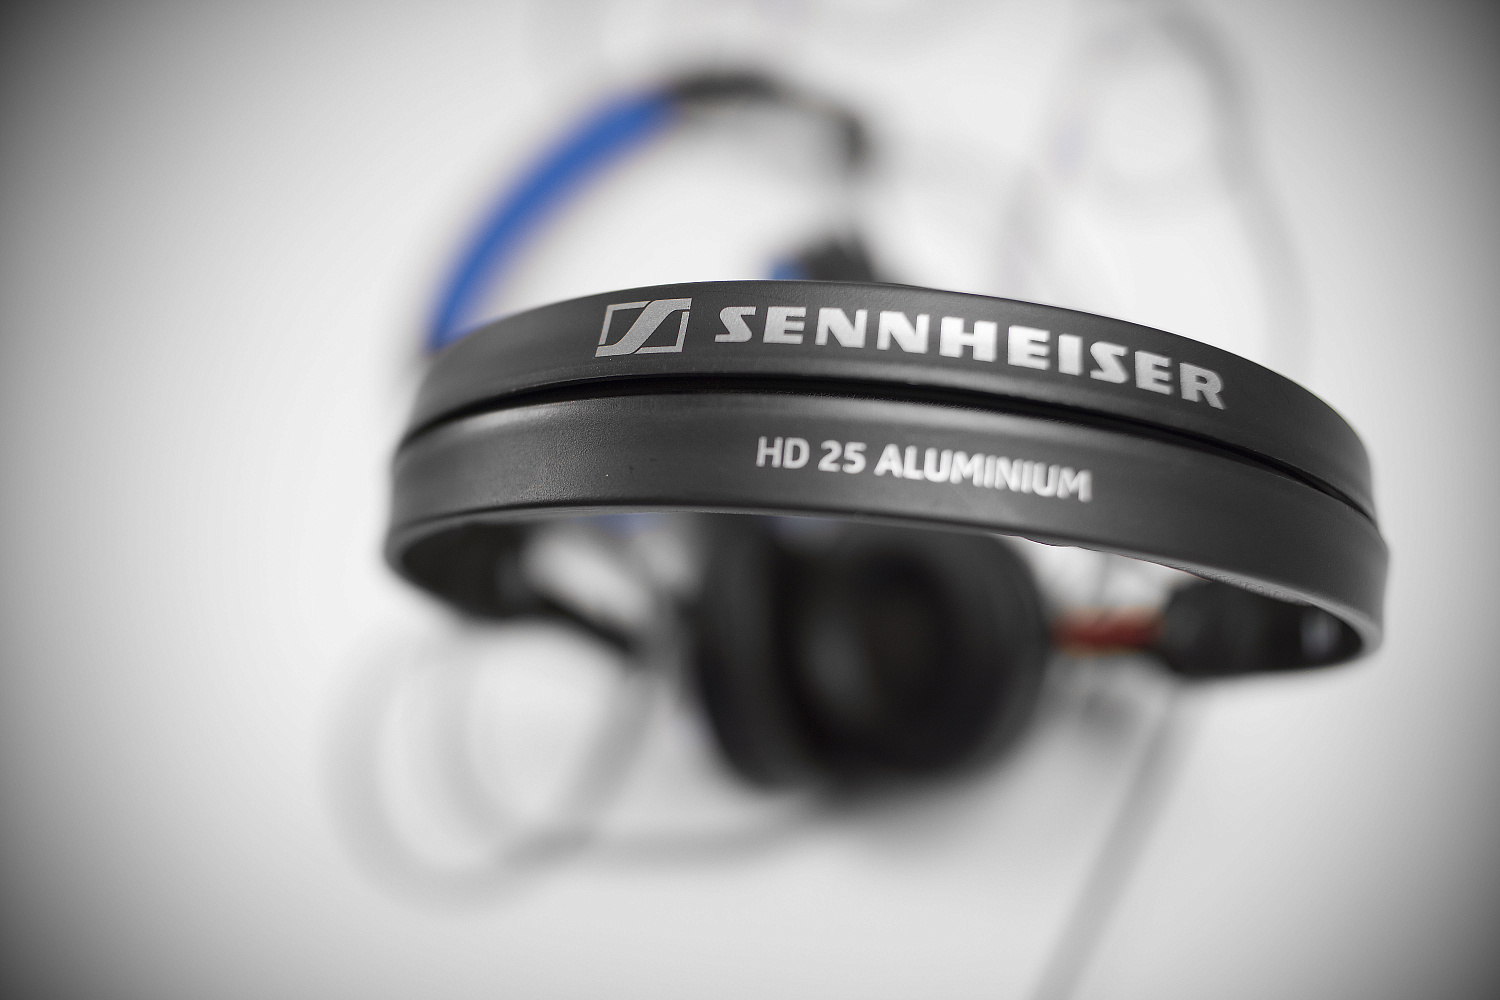 ОБЗОР: Sennheiser HD 25 Aluminium - новый вид легендарных наушников.